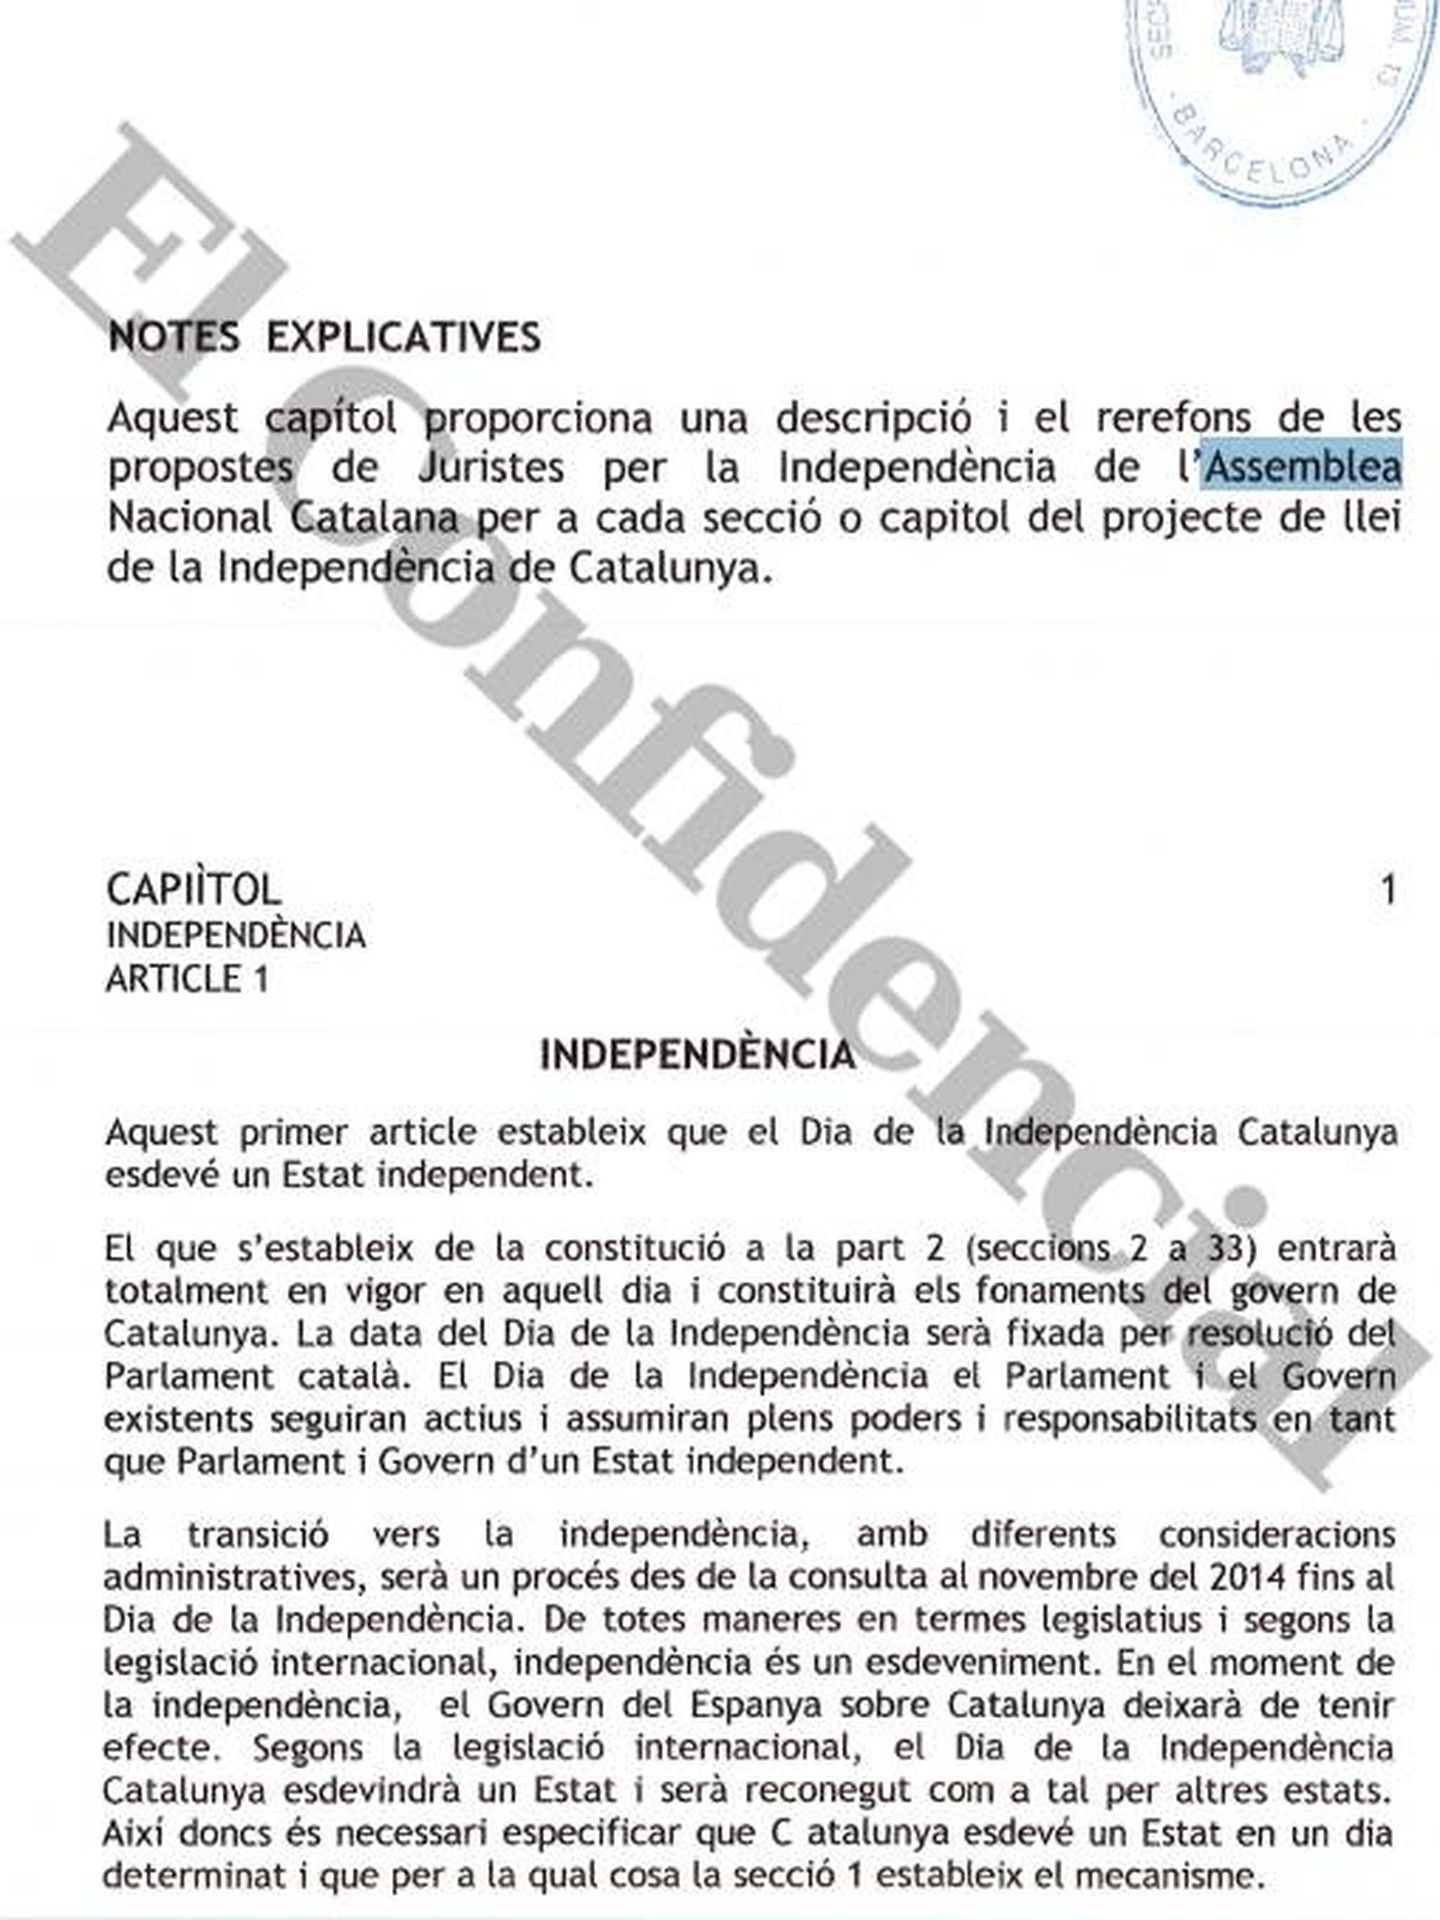 Primera página del borrador de ley de independencia elaborado por Sebastià Sardiné.